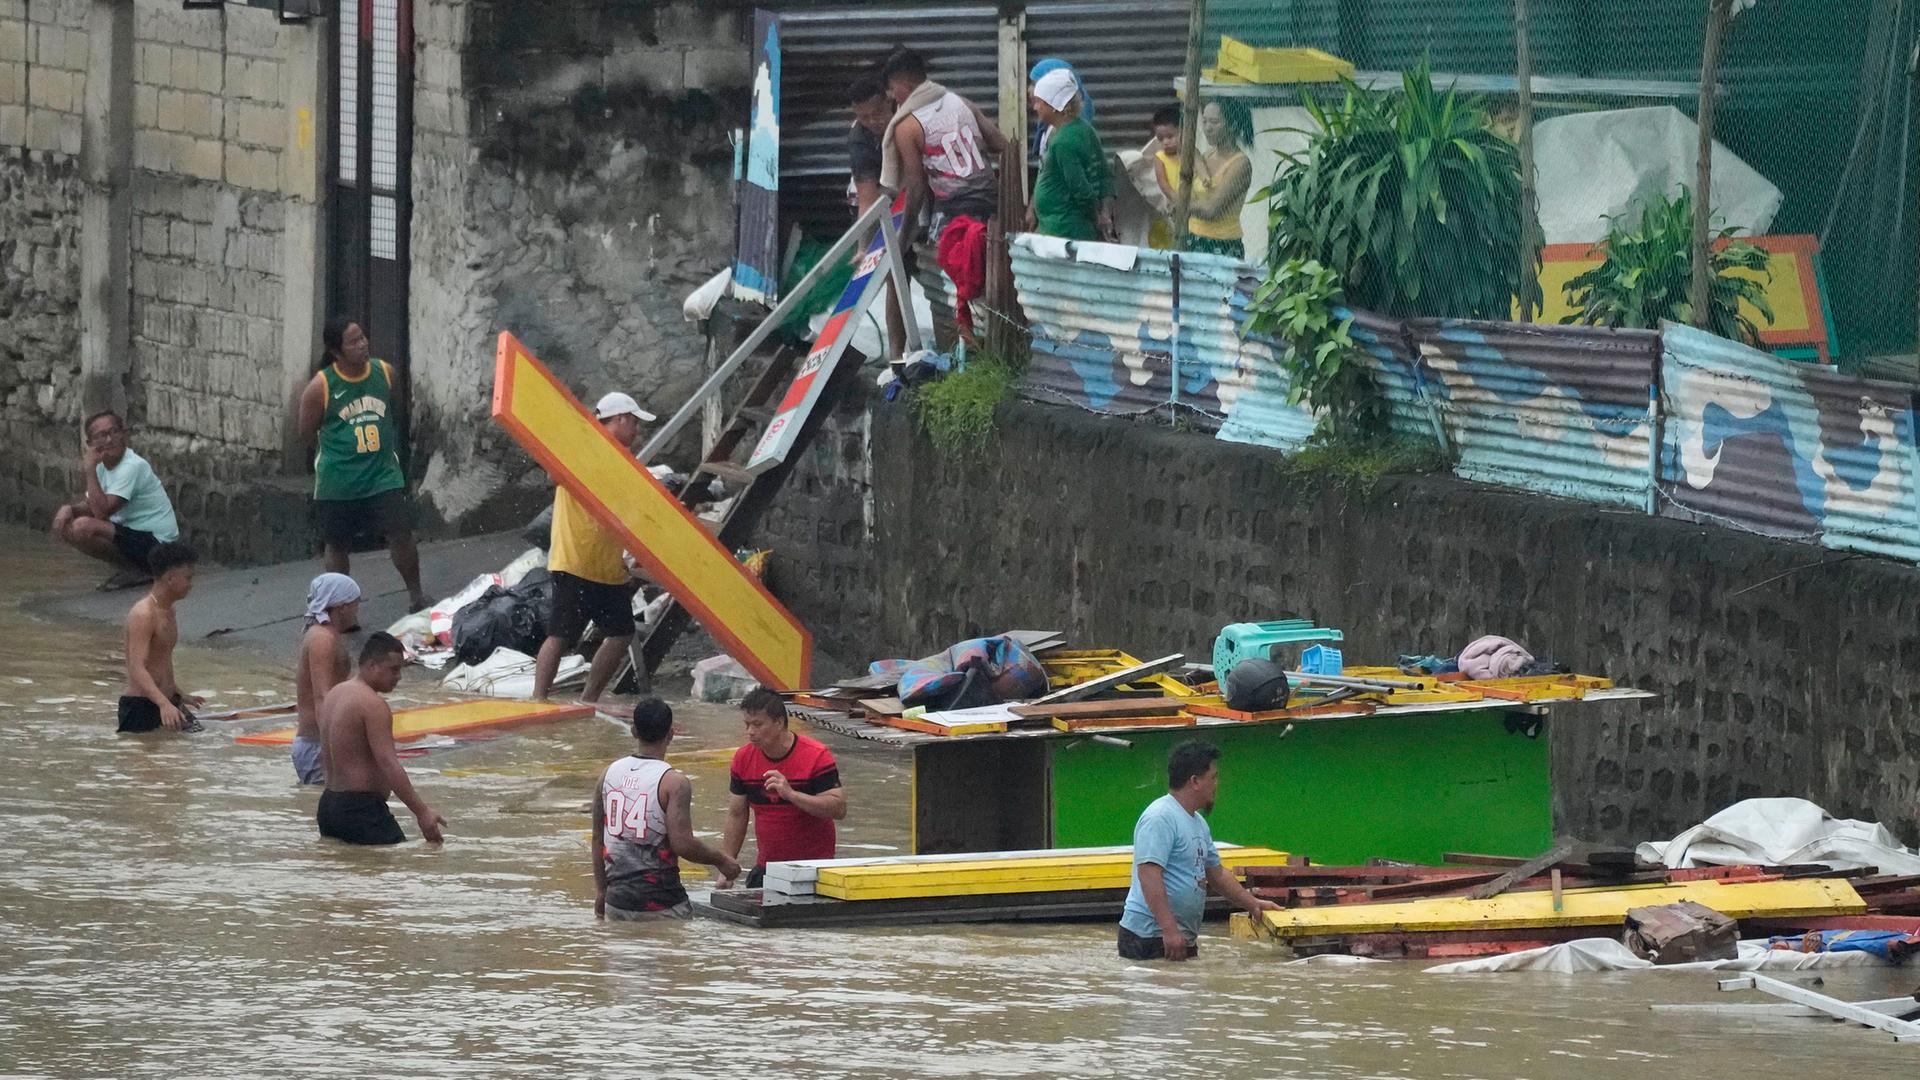 Philippinen, Marikina: Arbeiter transportieren Baumaterialien entlang eines durch die starken Regenfälle des Taifuns "Doksuri"angeschwollenen Flusses.